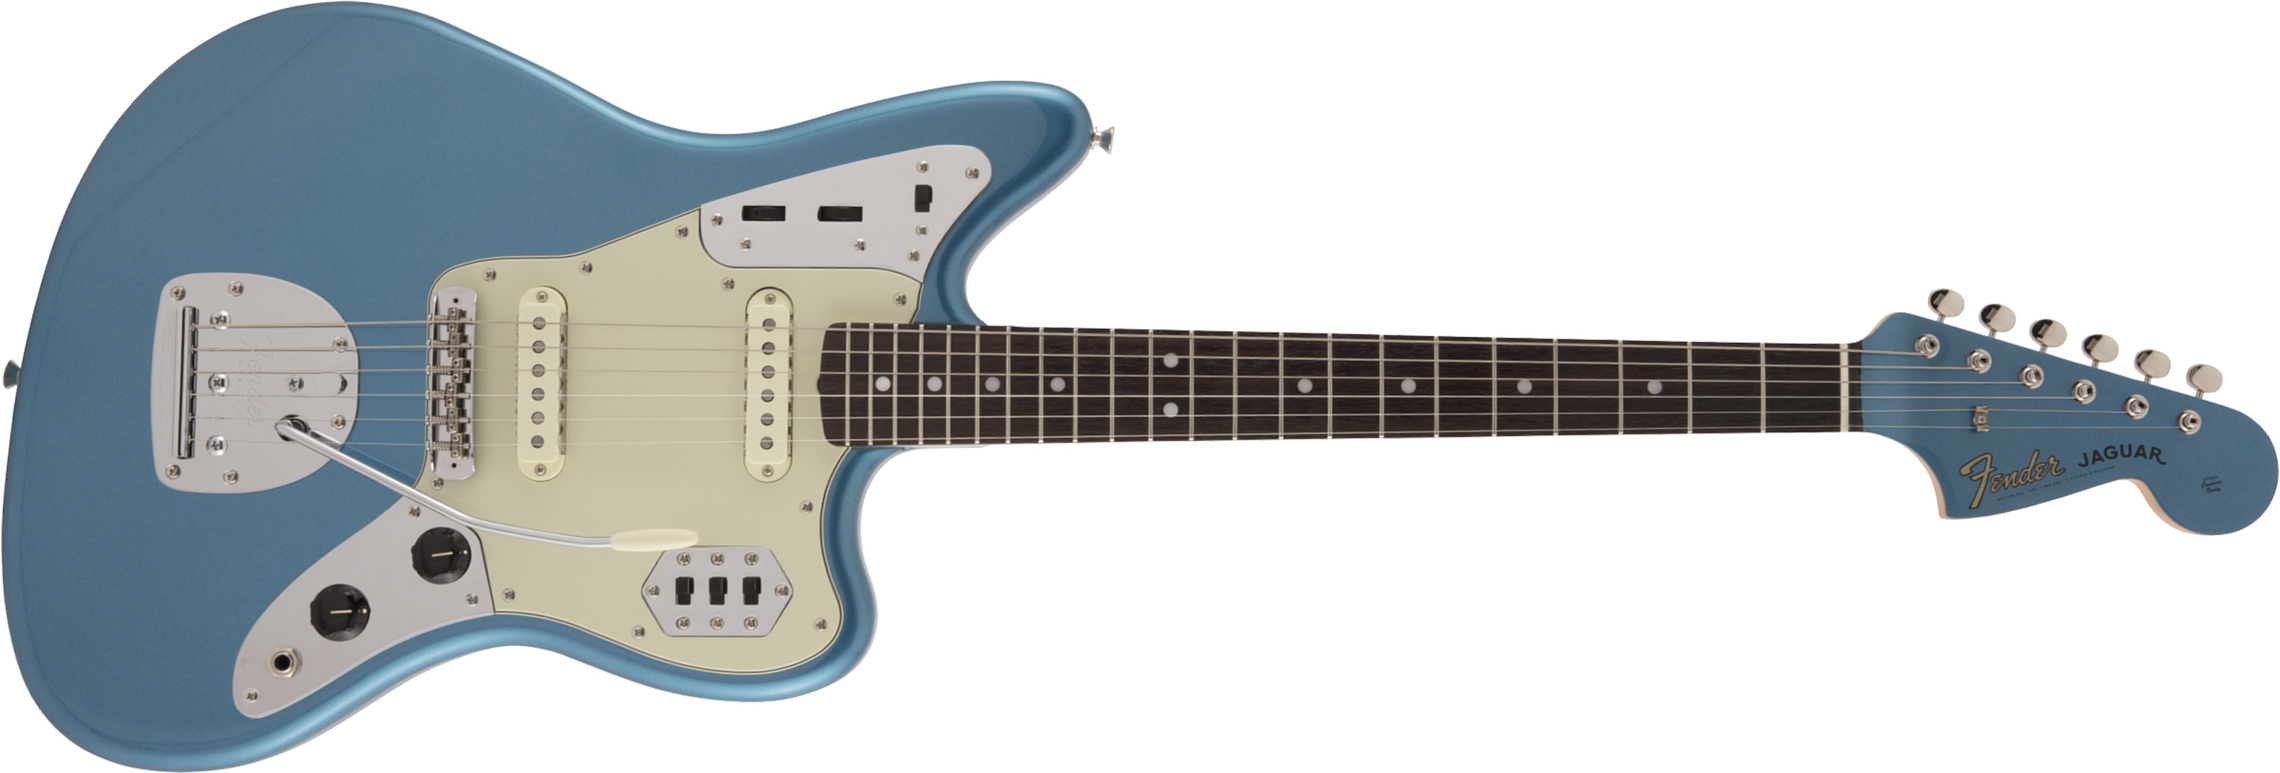 Fender Jaguar Traditional 60s Jap Rw - Lake Placid Blue - Retro rock electric guitar - Main picture